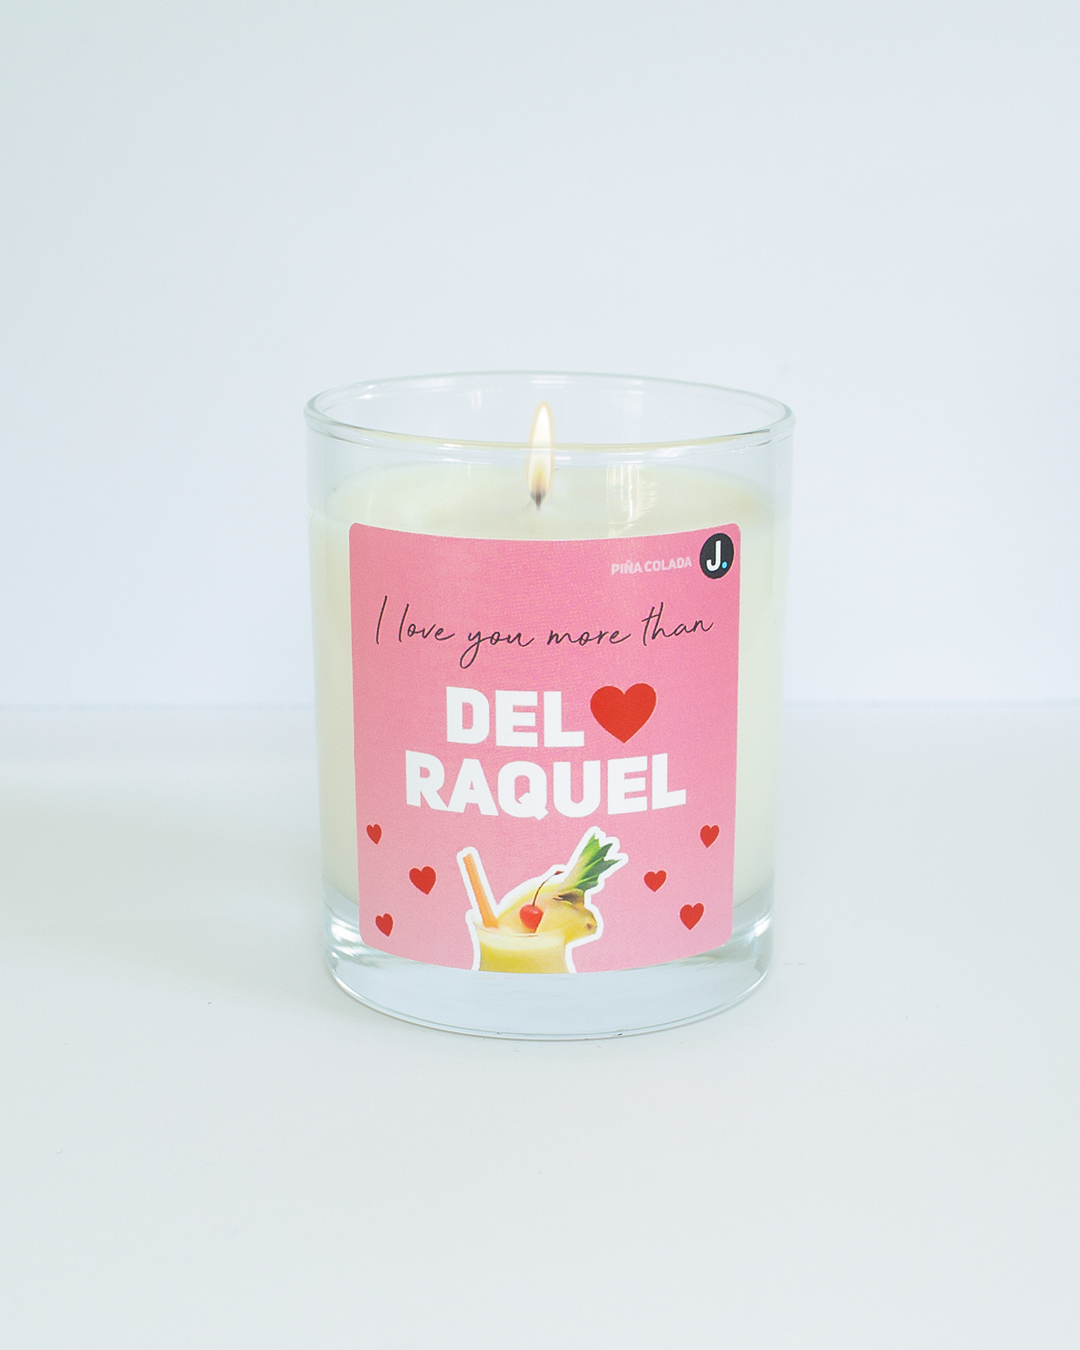 Del & Raquel (Piña Colada) Only Fools and Horses Inspired Candle - Only Fools and Horses Inspired Candle